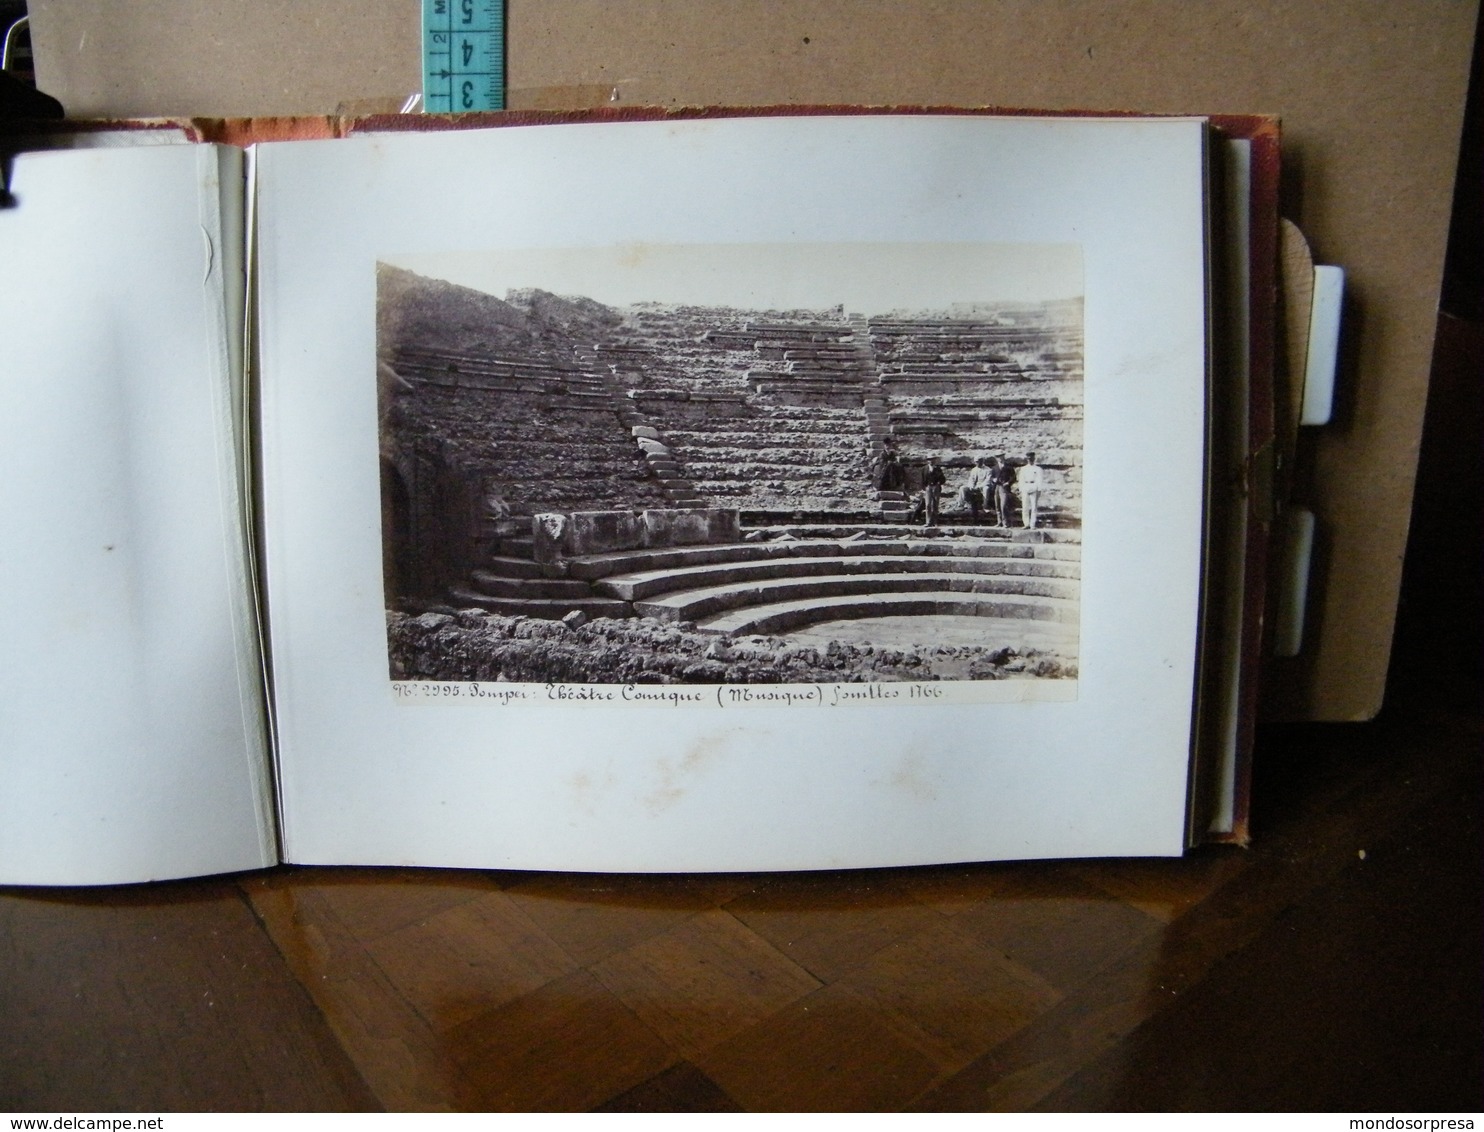 DB - ALBUM POMPEI - SOUVENIR, FOTOGRAFICO ANNO 1874 - 48 STAMPE FOTOGRAFICHE - NAPOLI